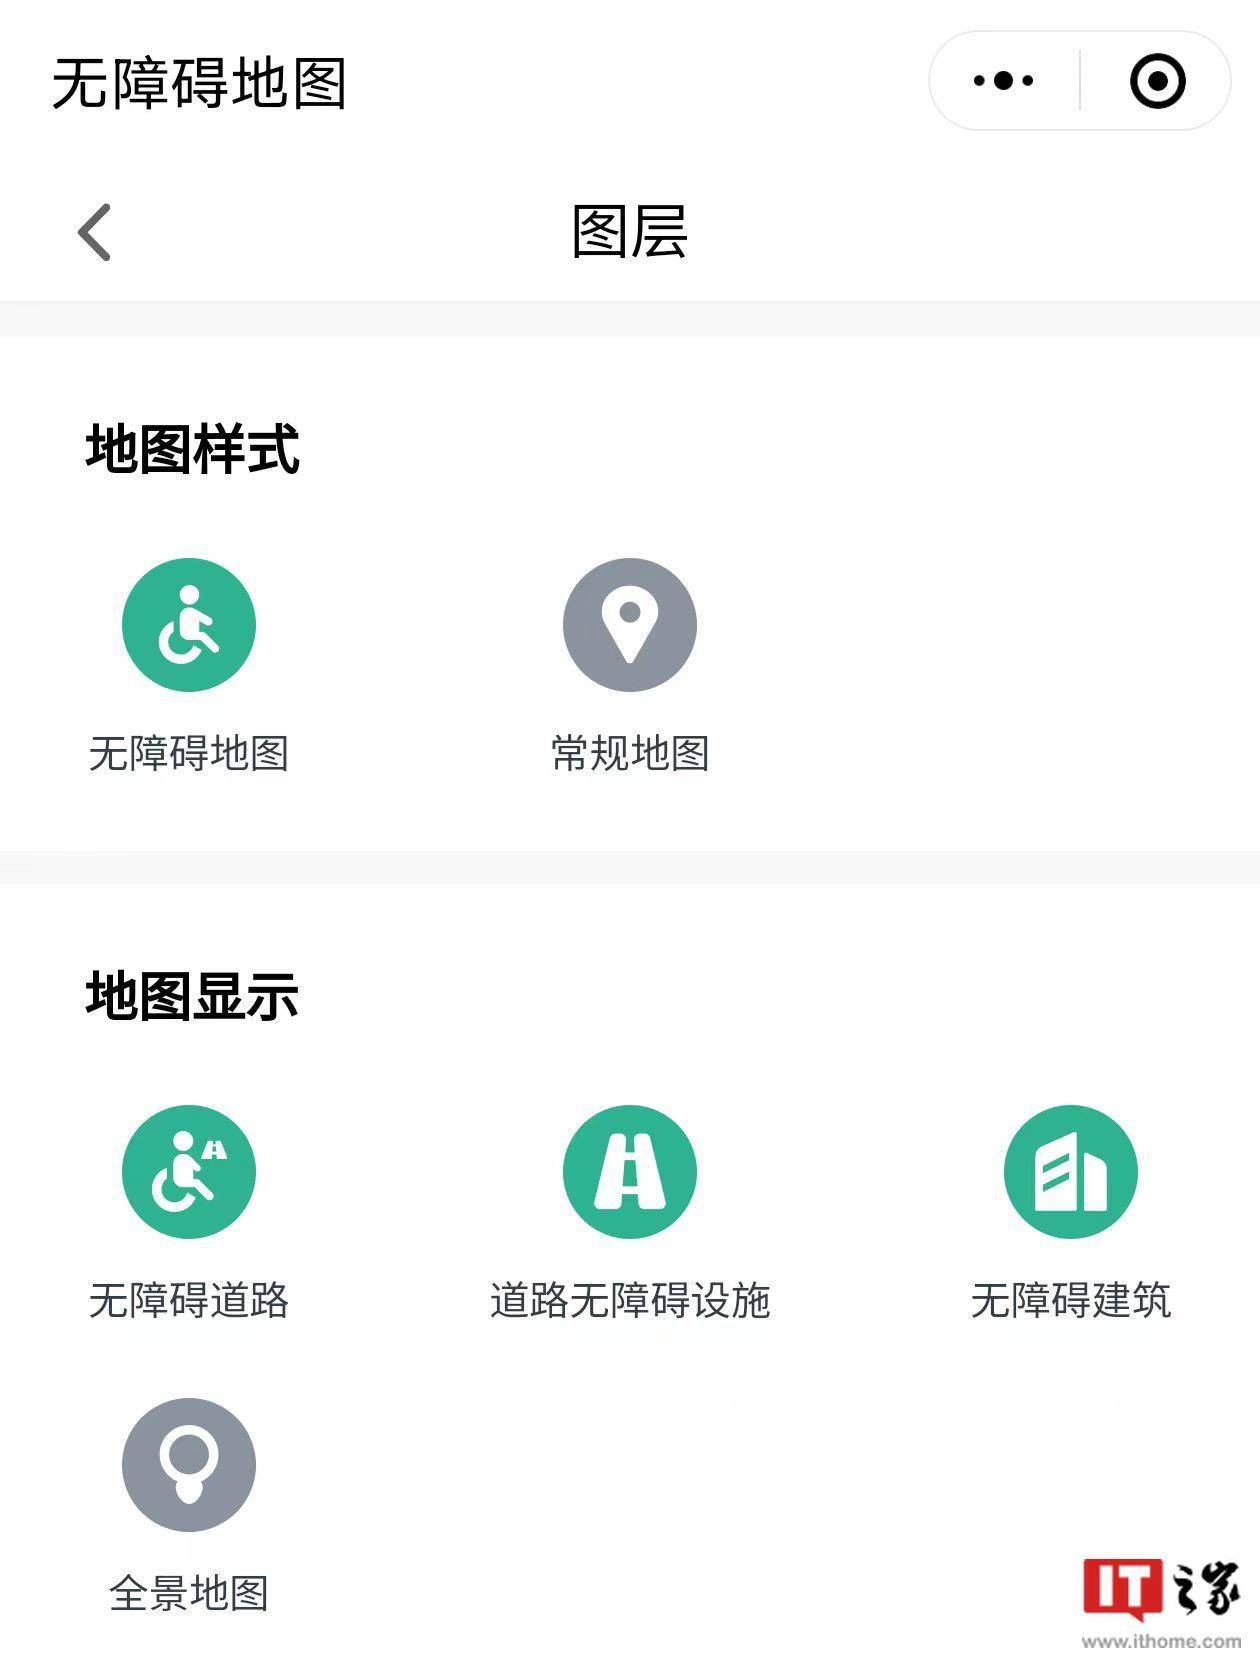 深圳市无障碍电子地图发布 连接无障碍设施资源以及其他各类信息资源